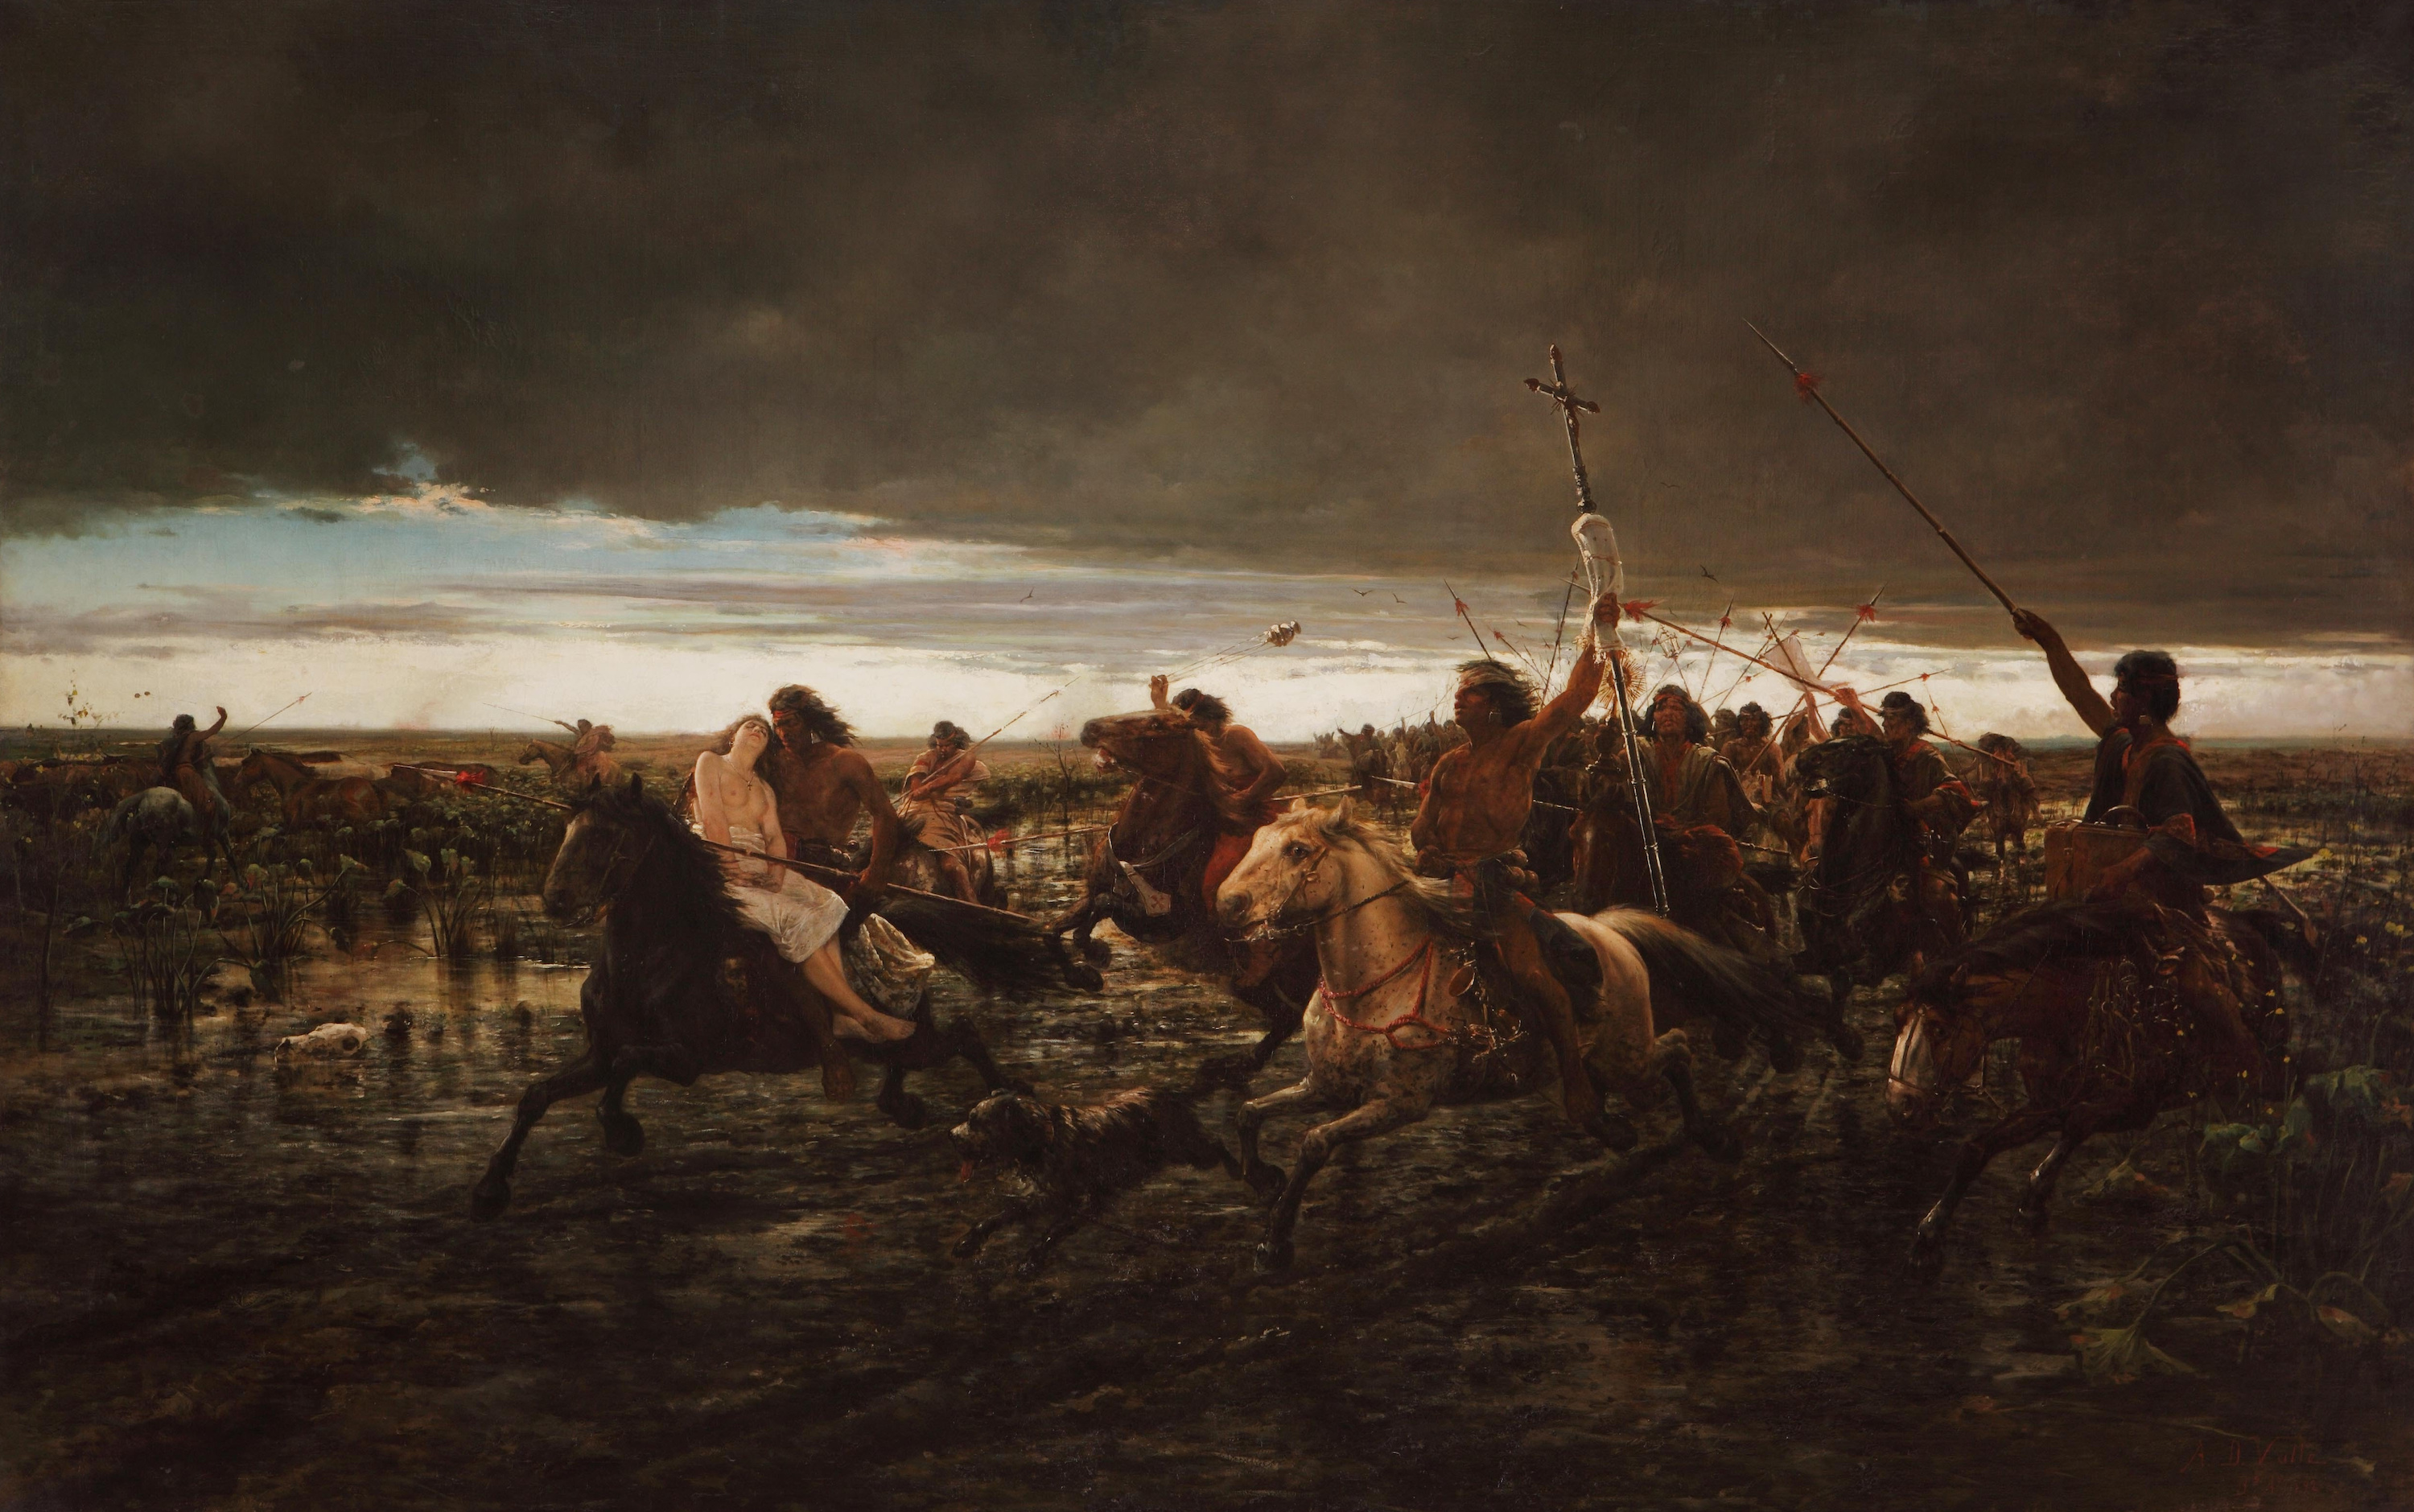 عودة الغزاة by Ángel della Valle - 1892 